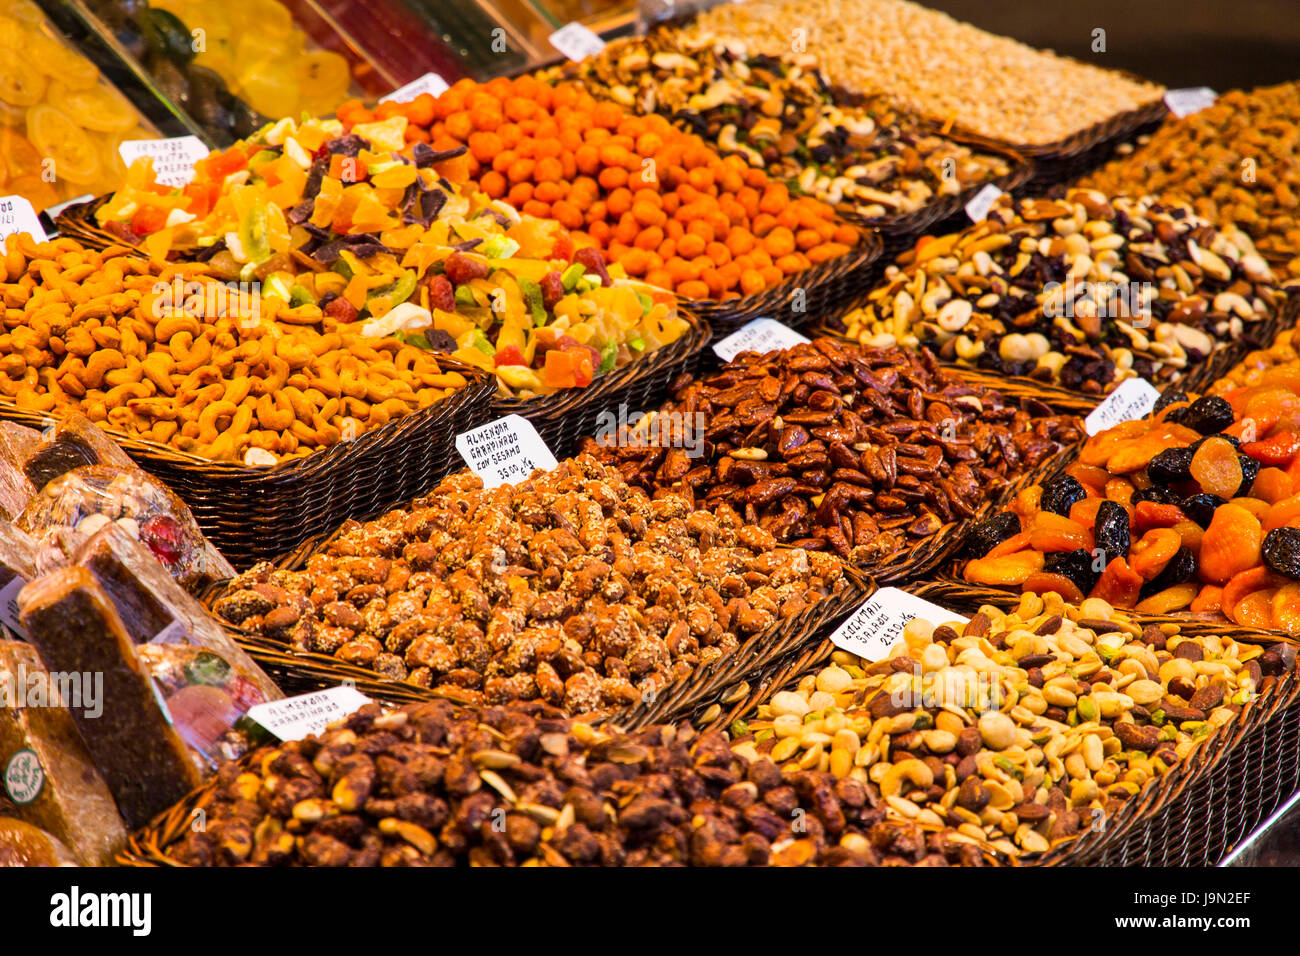 Apetitoso muestra de frutas, vegetales, nueces, dulces, carnes, pescados y quesos saludar a los visitantes a la expansión del mercado de La Boquería en Barcelona, España. Foto de stock